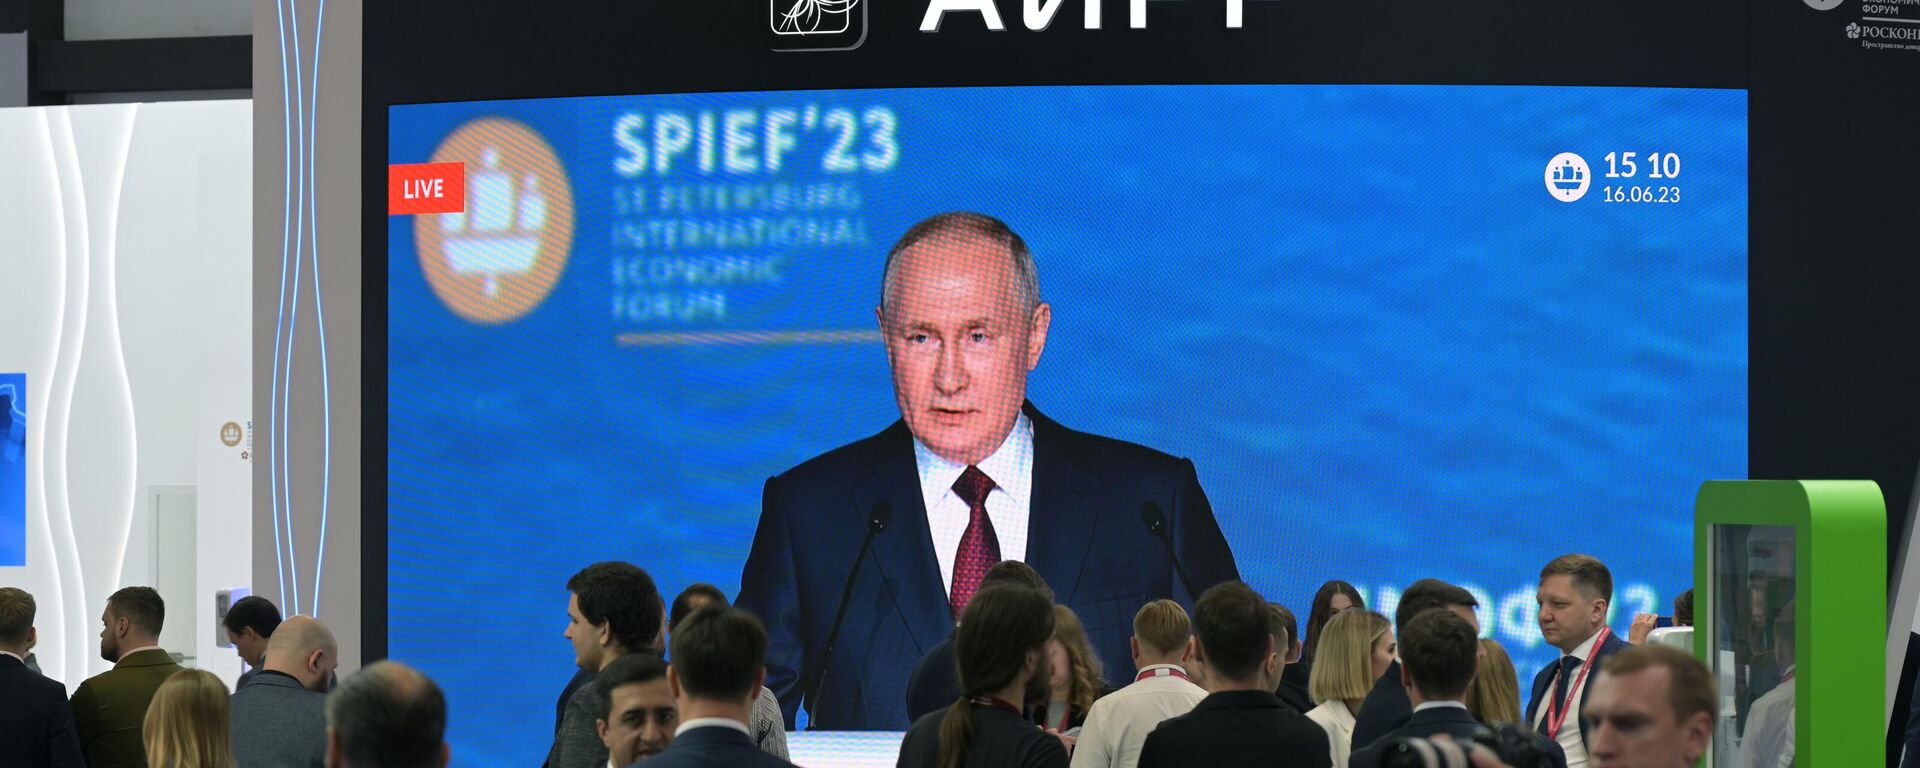 Tổng thống Nga Vladimir Putin tham dự SPIEF-2023 - Sputnik Việt Nam, 1920, 16.06.2023